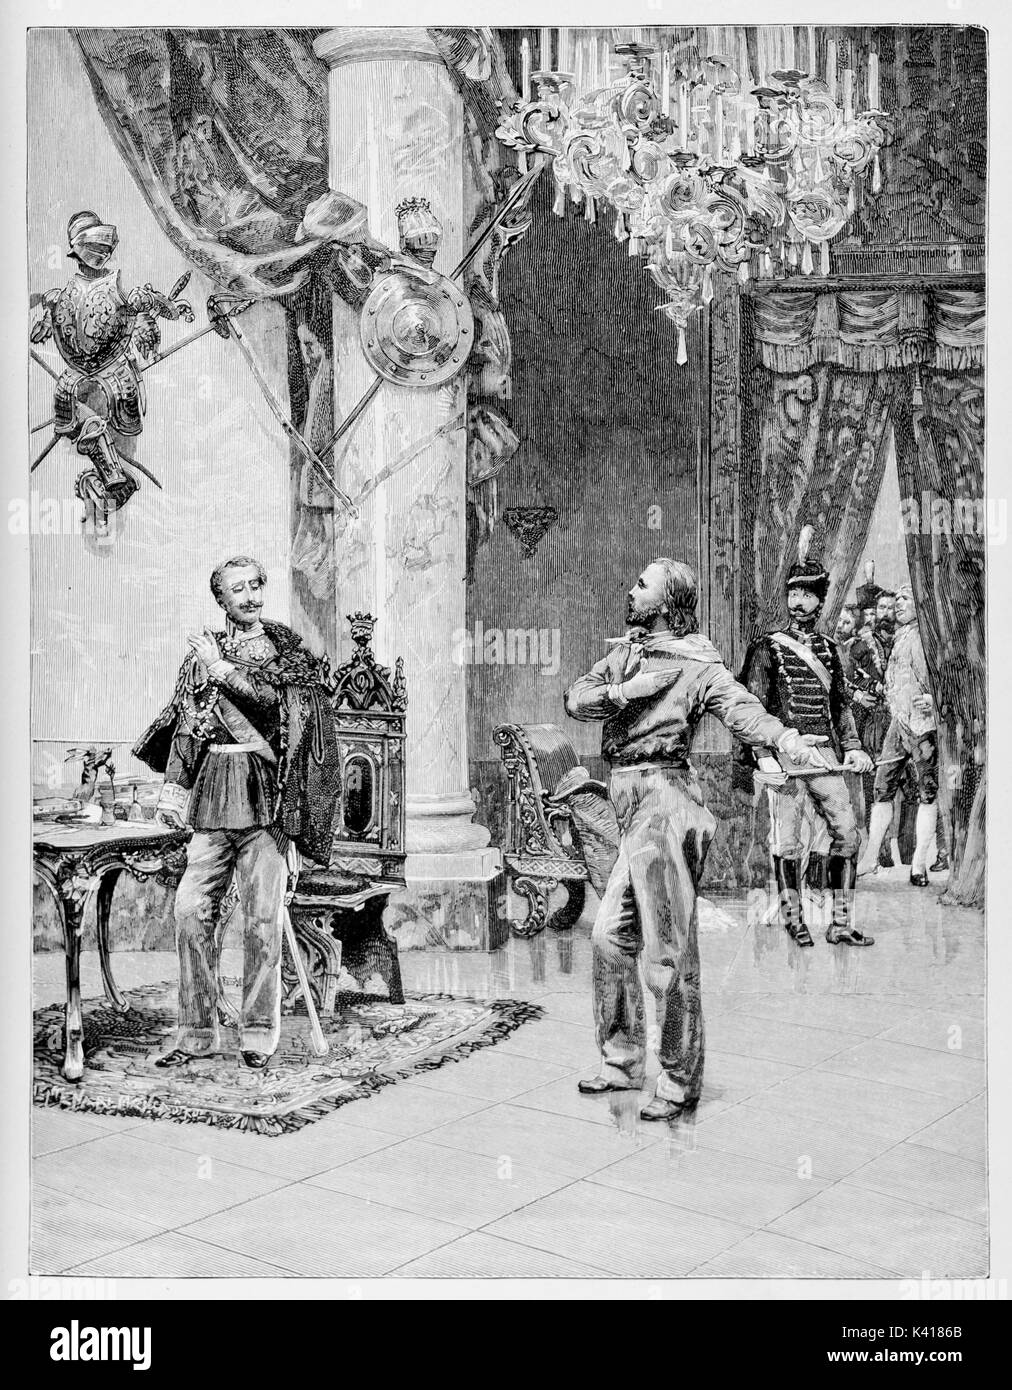 Garibaldi trifft König Carlo Alberto in einem luxuriösen Royal Hall mit einem großen Kristall Kronleuchter. Durch E.Matania auf Garibaldi e i Suoi Tempi Mailand Italien 1884 Garibaldi und Carlo Alberto veröffentlicht. Stockfoto